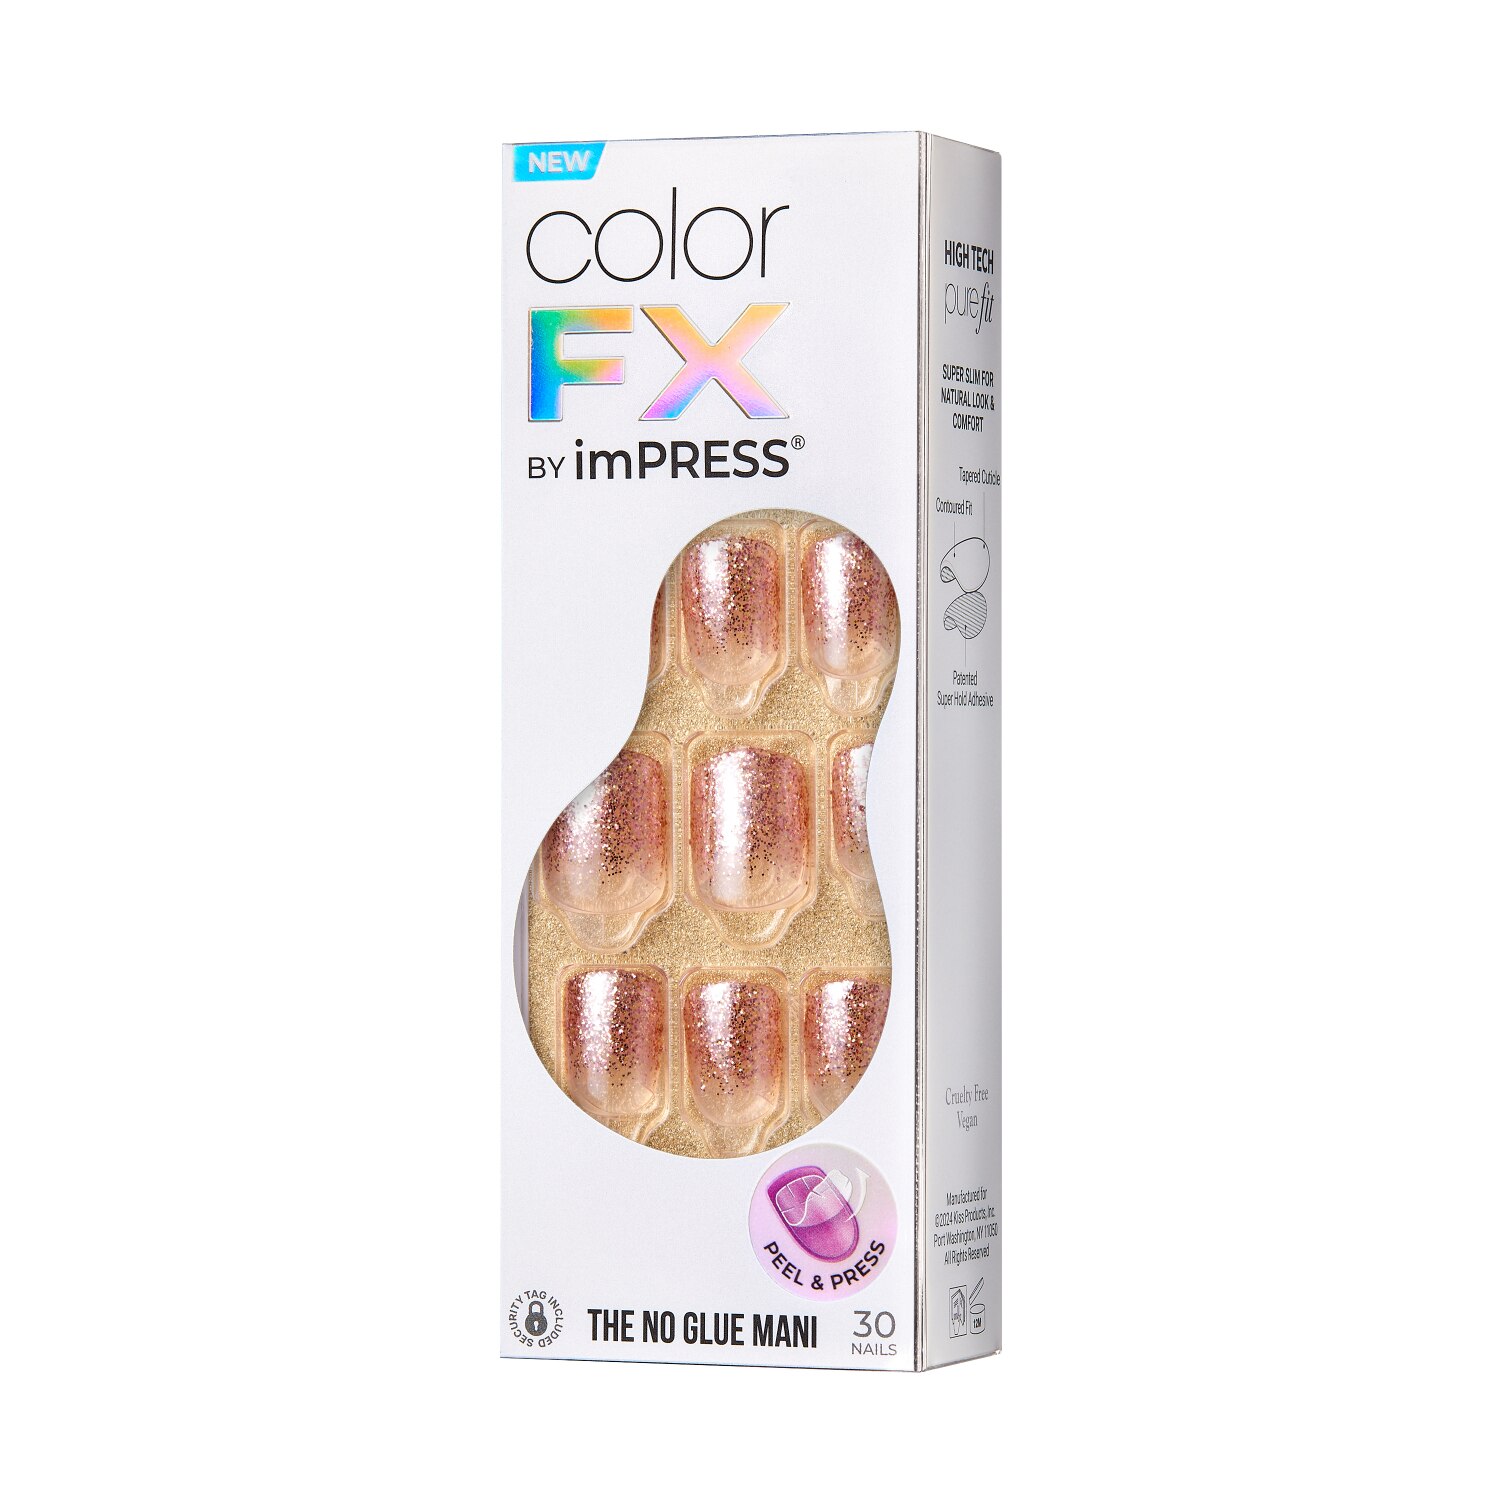 KISS ImPRESS Color FX Press-On Nails, Dimension , CVS